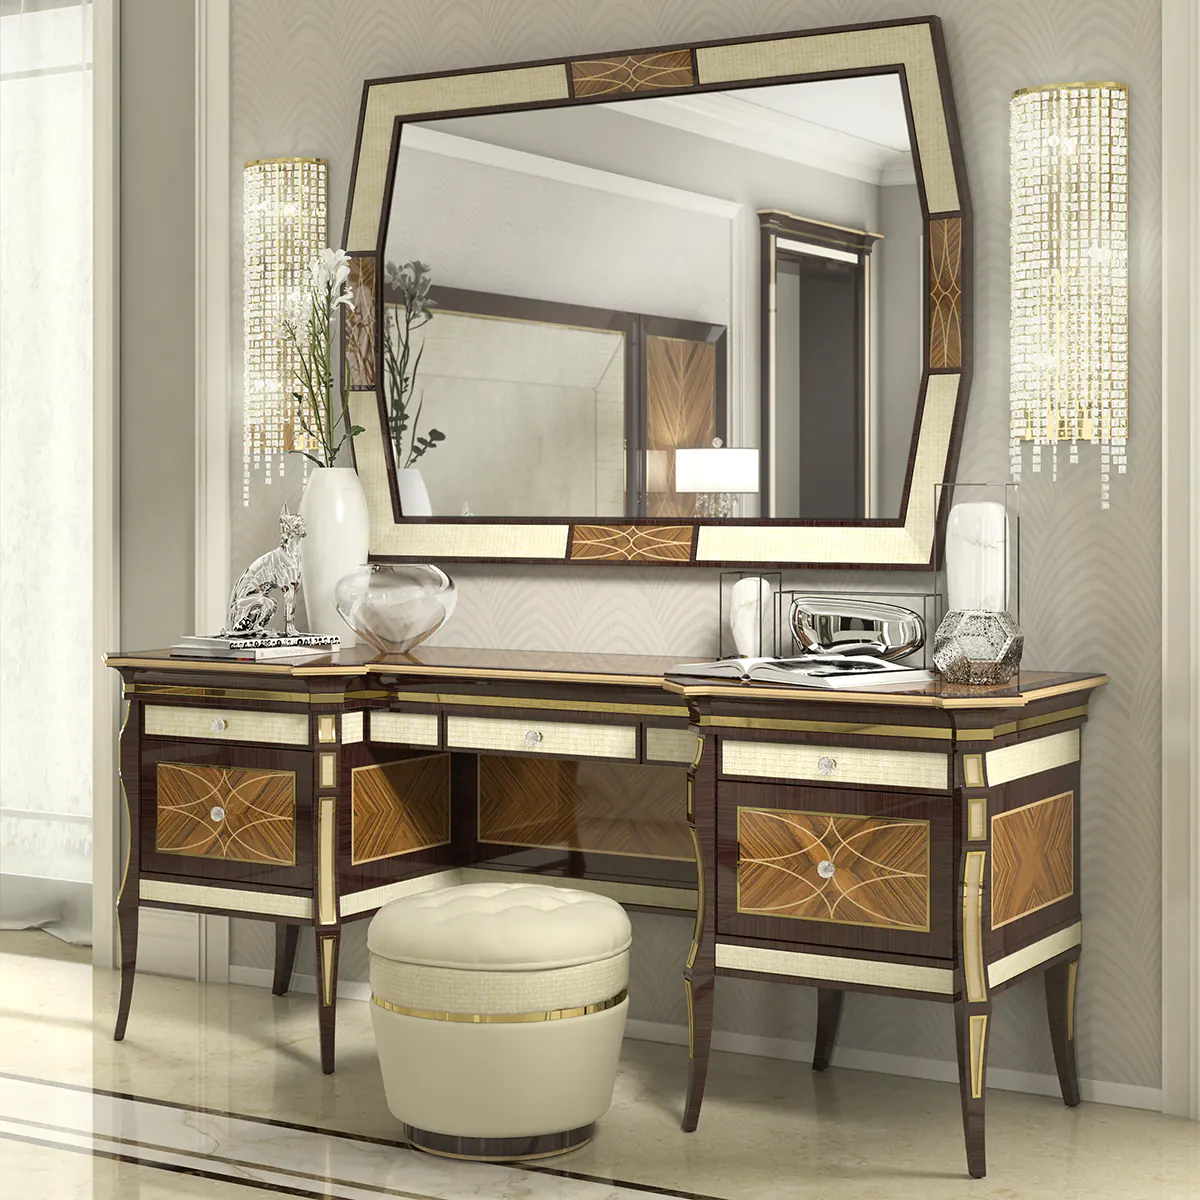 Monte Carlo LUX vanity dresser